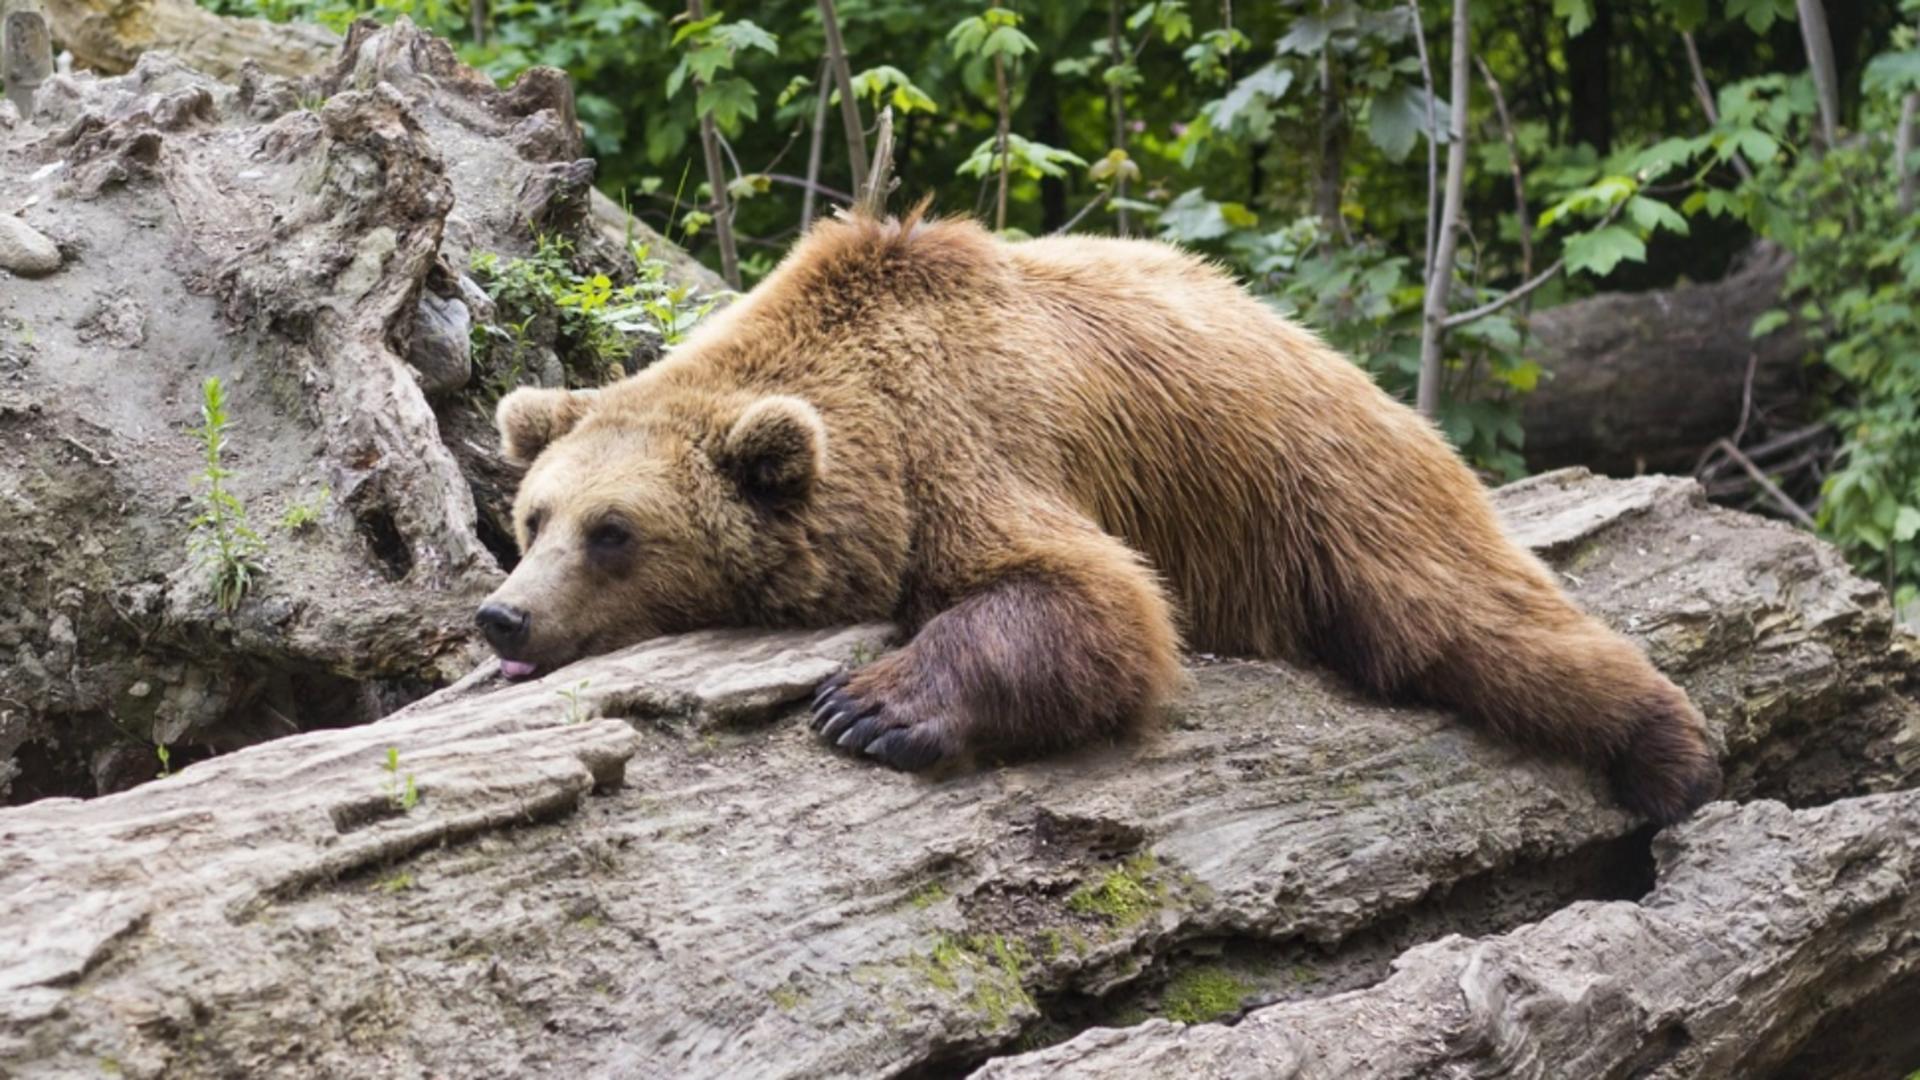 Premieră în România: ALERTĂ de urși în județul Brăila, în zona de câmpie. A fost emis un mesaj RO ALERT